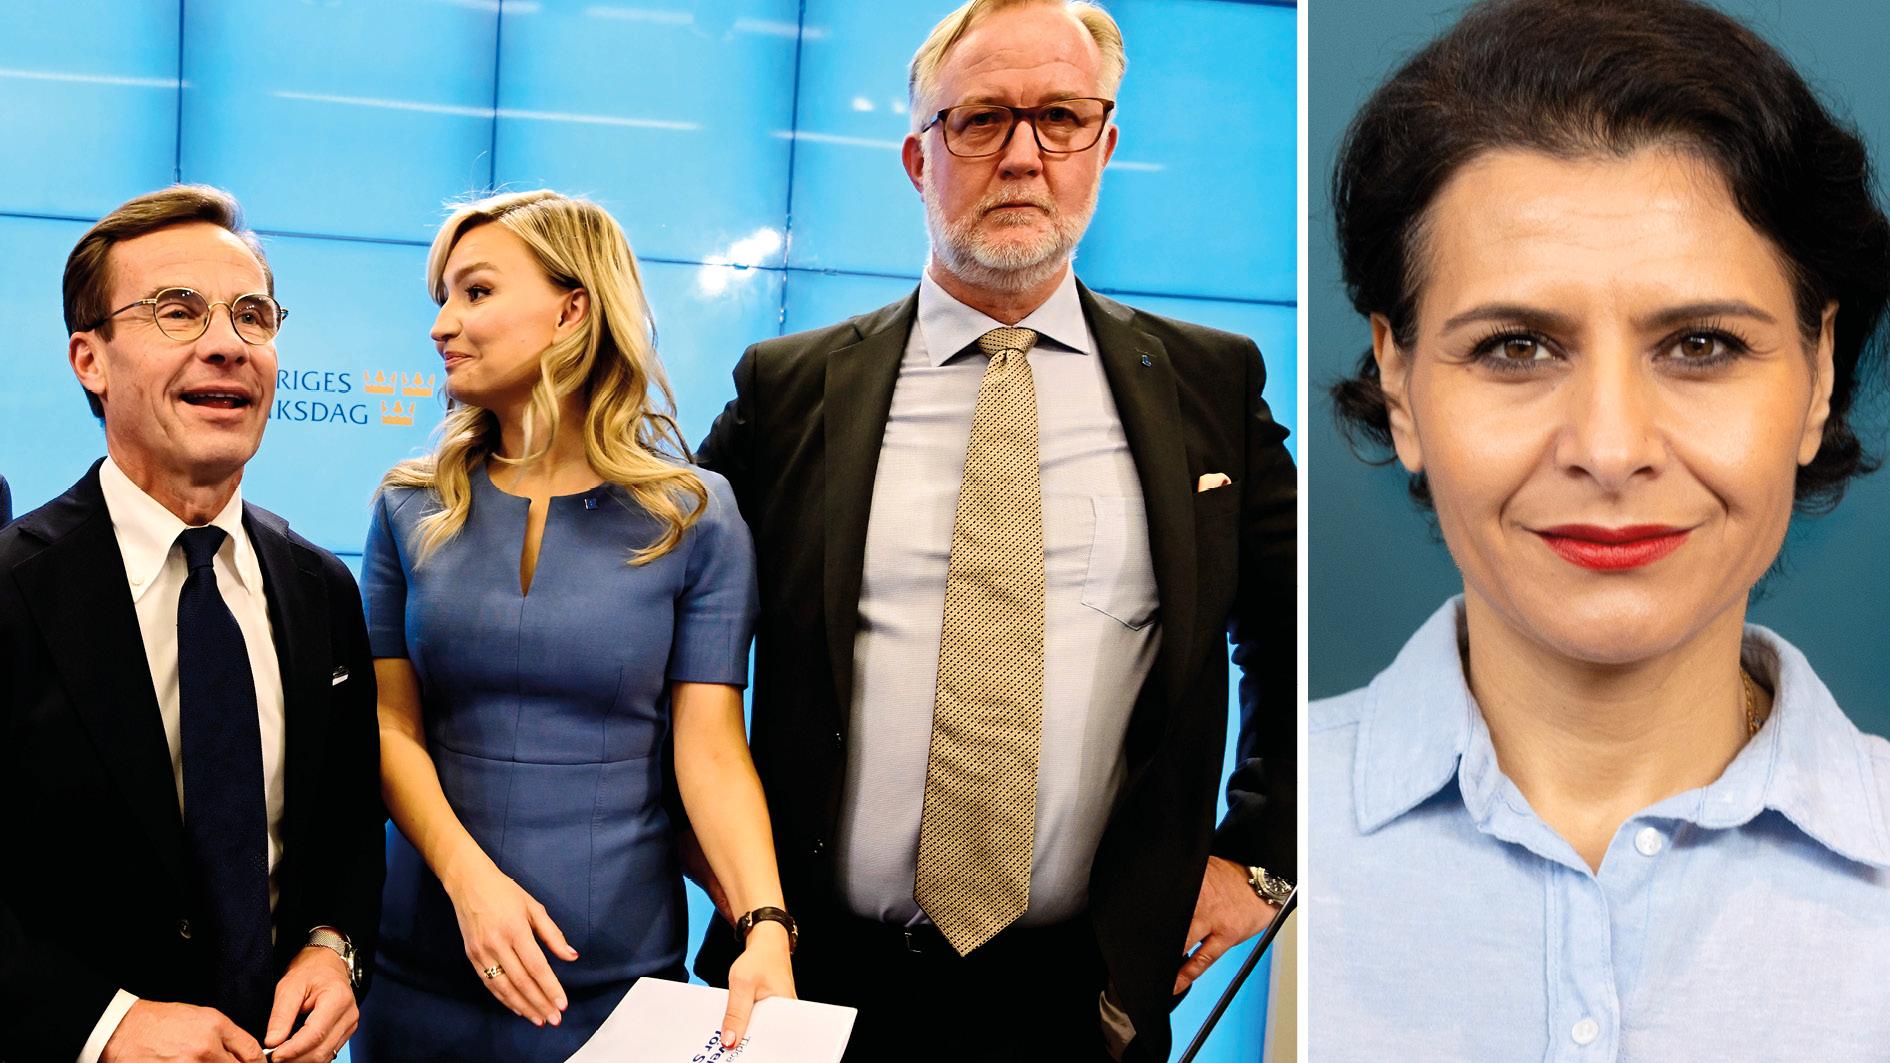 Svenska företag slår larm om bristen på kompetens och på personer att anställa. Då stänger regeringen gränserna för att fjäska med SD:s rasistiska syn på arbetskraftsinvandring, skriver Abir Al-Sahlani, Centerpartiet.